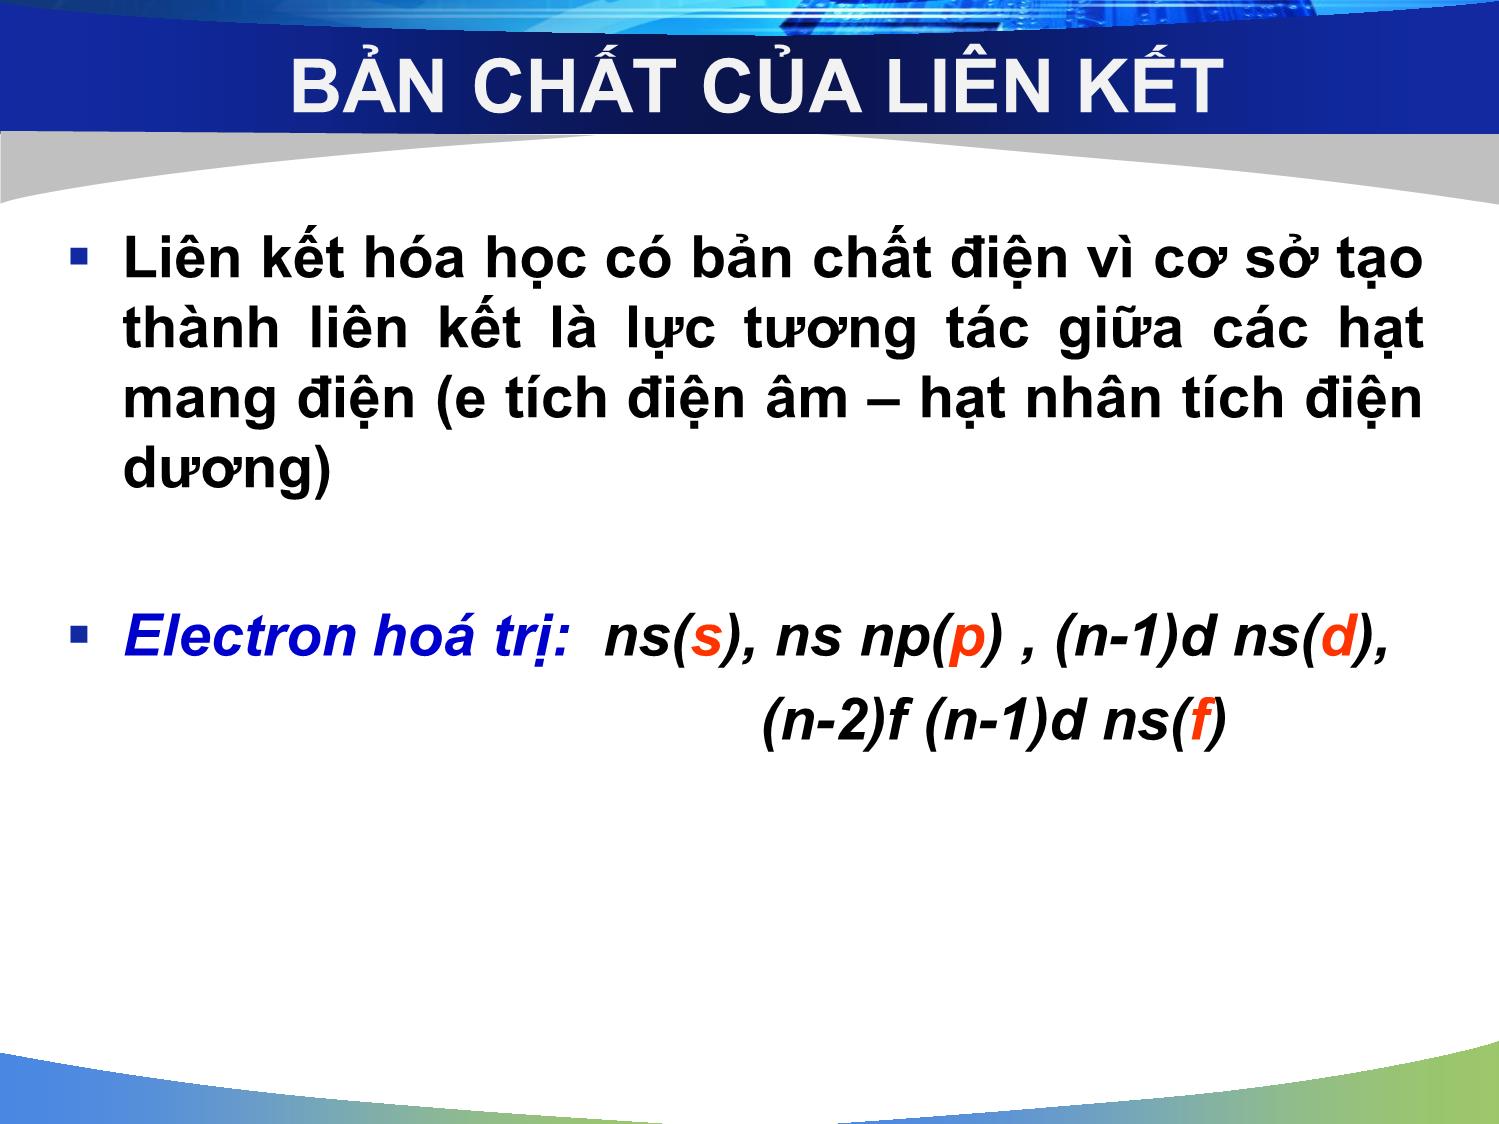 Bài giảng Hóa đại cương: Liên kết hóa học và cấu tạo phân tử - Nguyễn Minh Kha trang 4